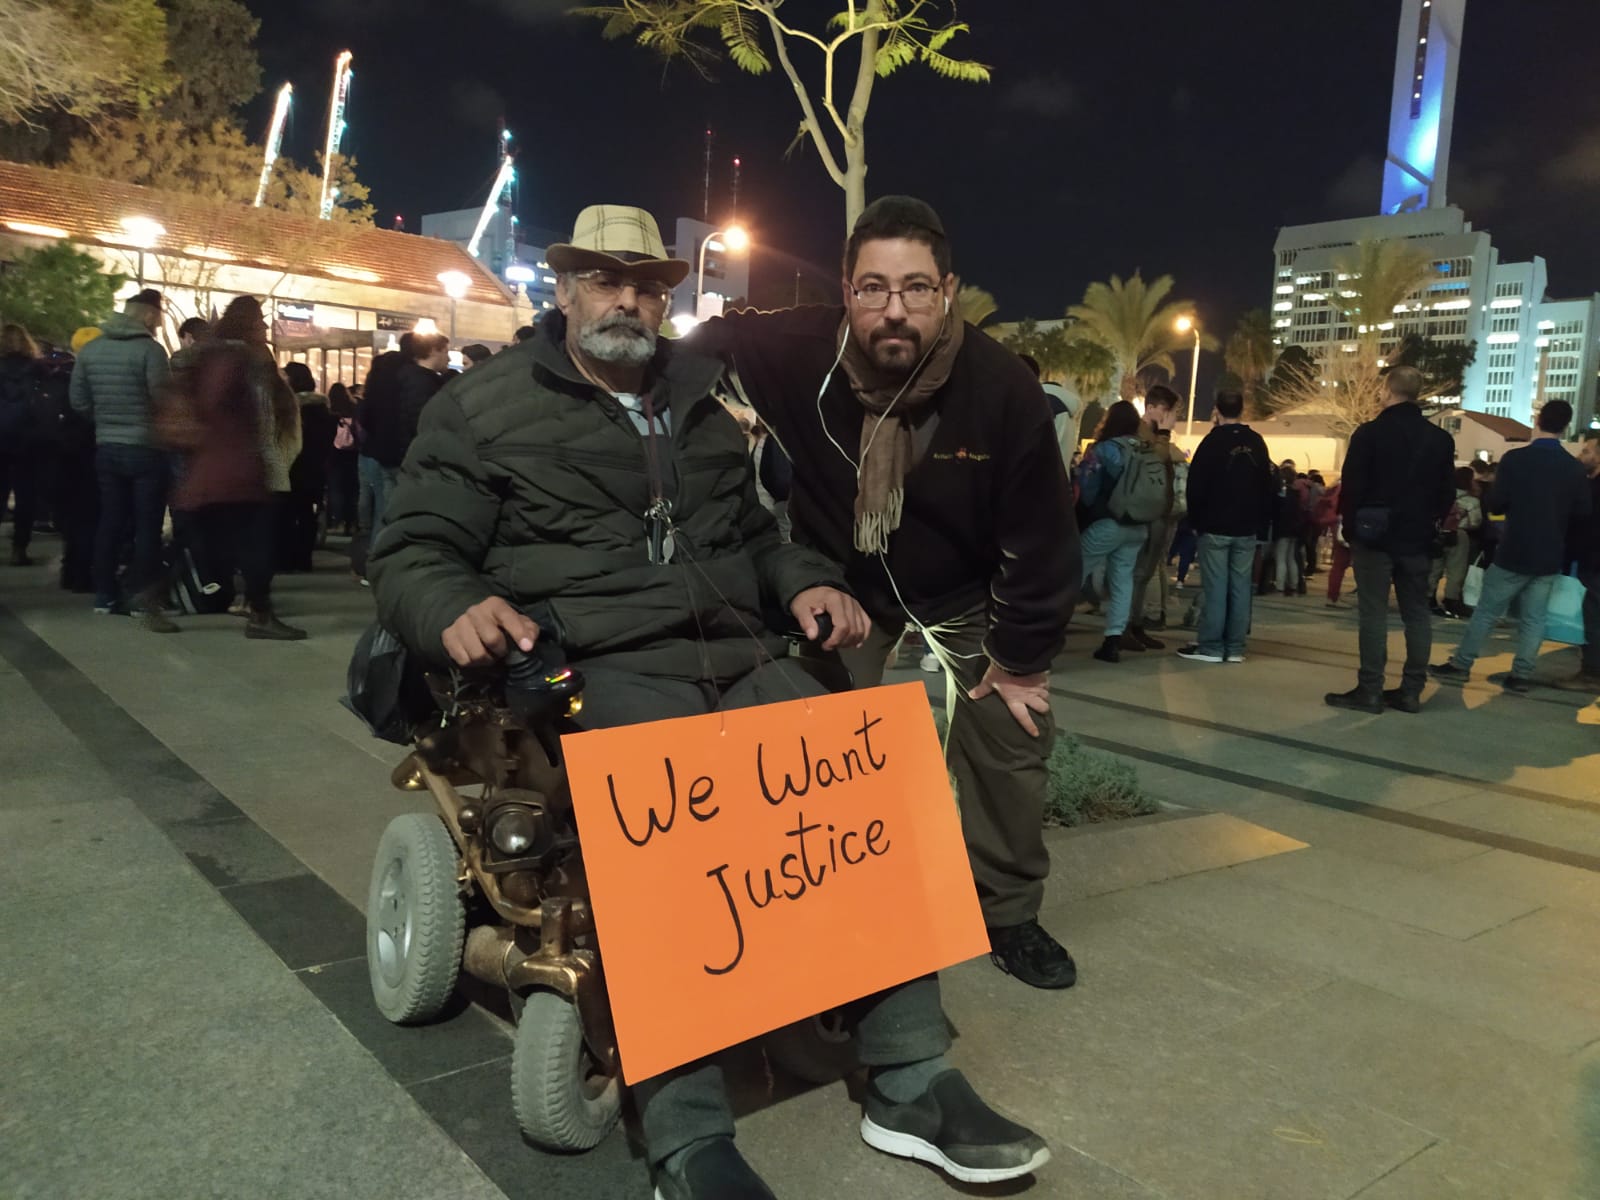 الاحتجاج من أجل رفع فوائد الإعاقة في تل أبيب ، 30 كانون الثاني (يناير) 2020 (تصوير: نيصن صبي كهن)